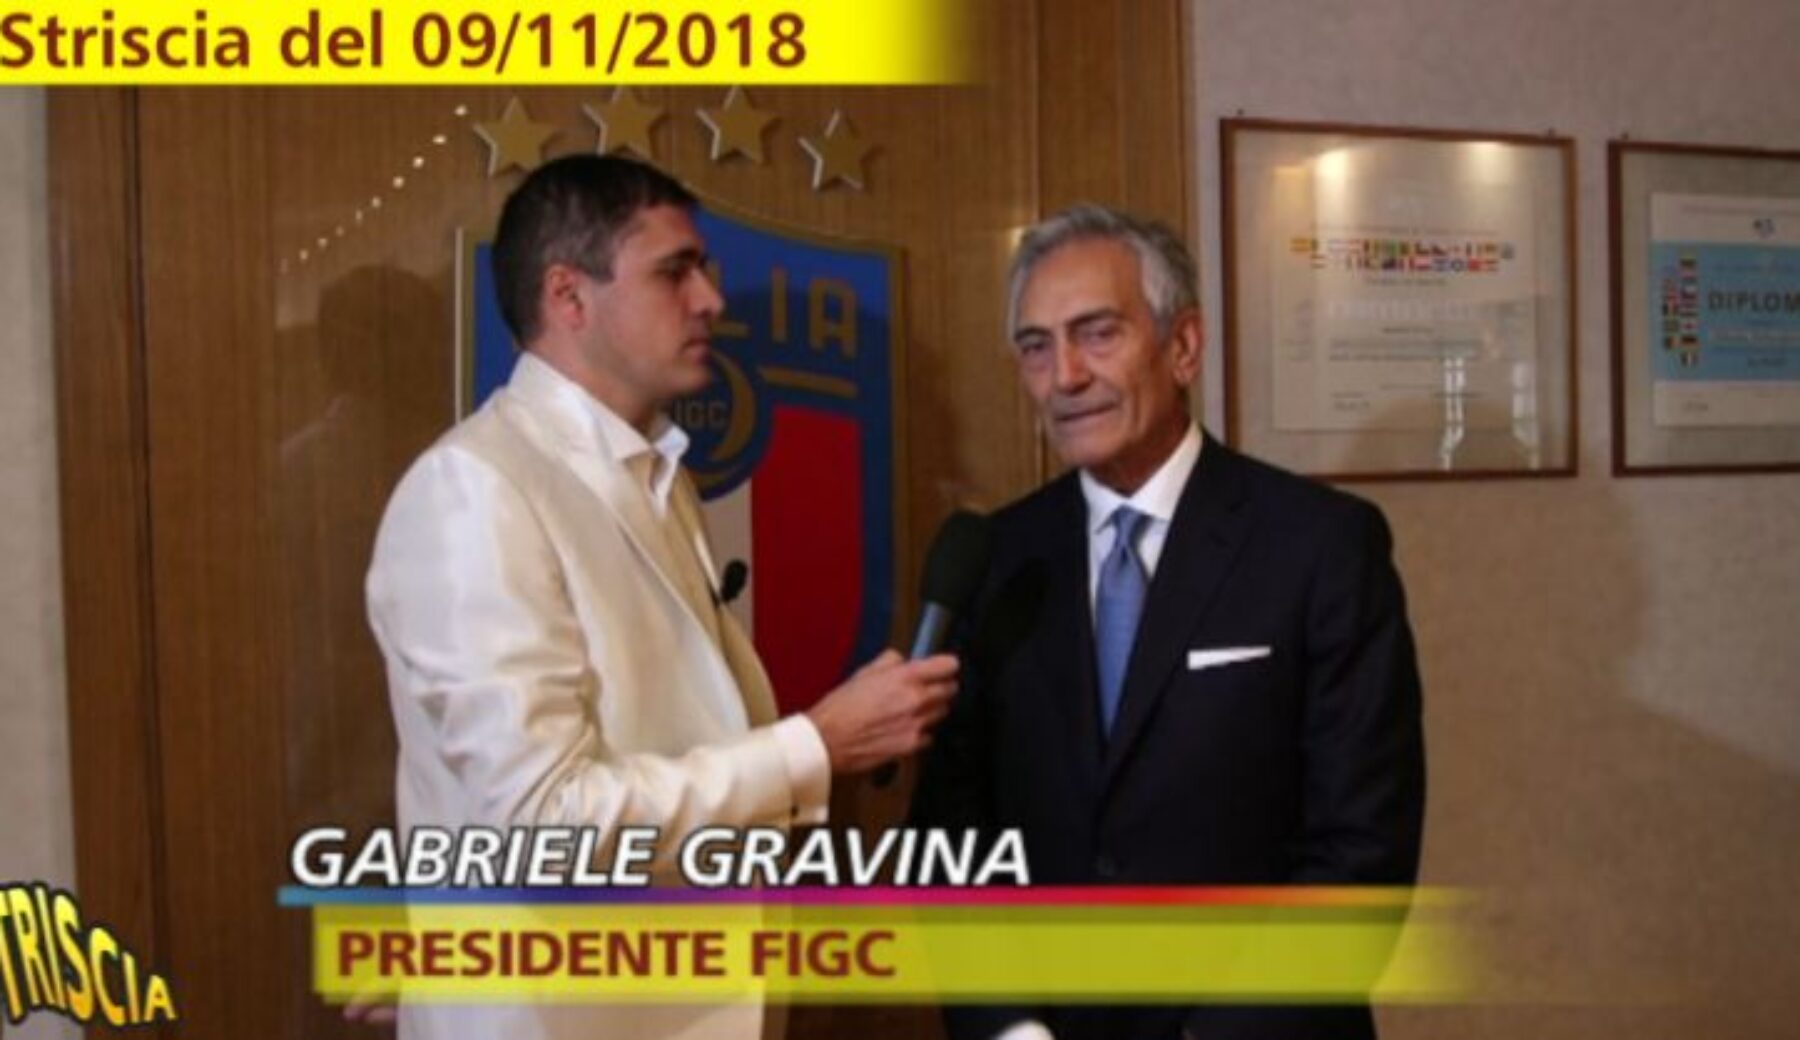 Gravina (FIGC) e la nuova norma anti plusvalenze: dopo il caso Juve, una promessa già fatta a Striscia nel 2018